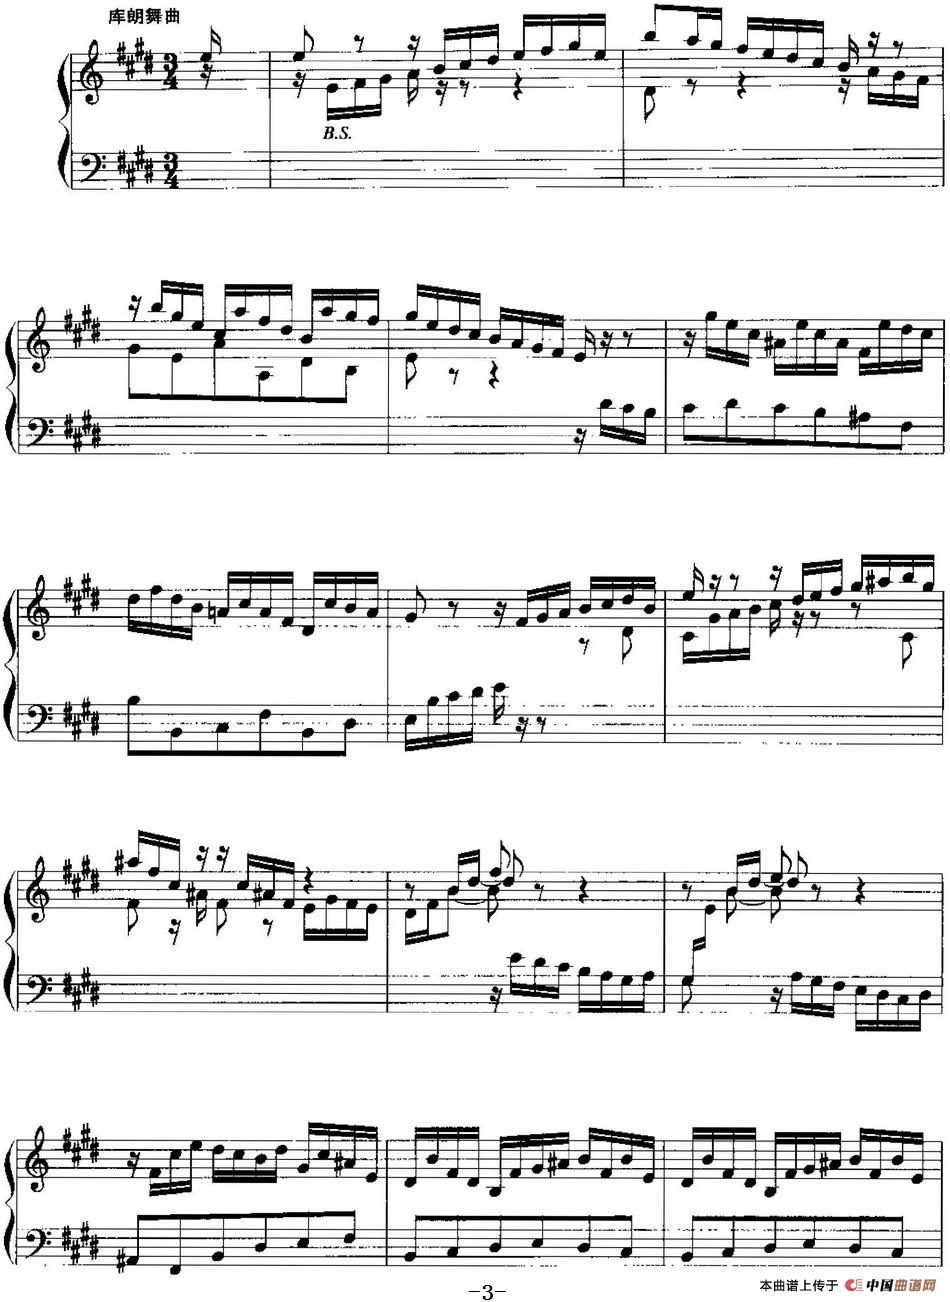 手风琴复调作品：第六法国组曲手风琴谱（线简谱对照、带指法版）